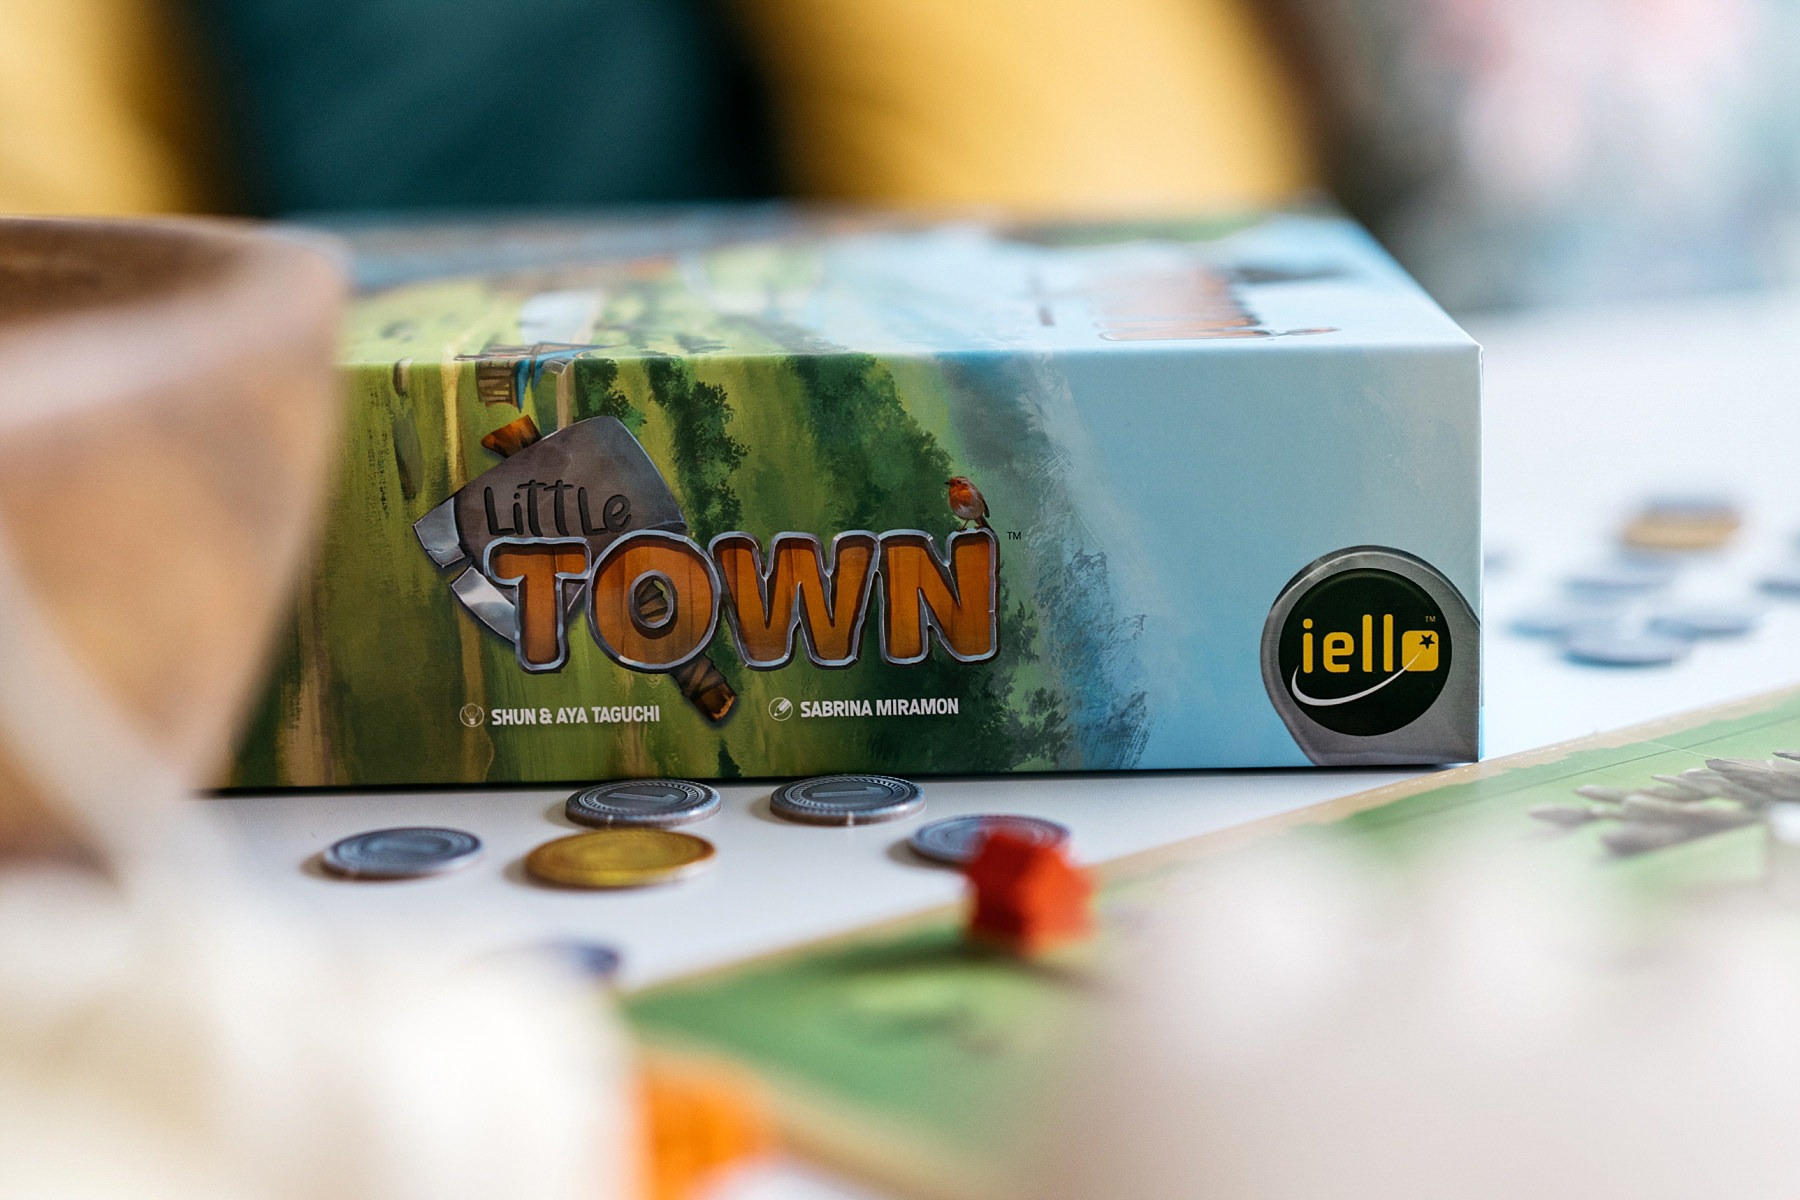 Little town Iello jeu de société